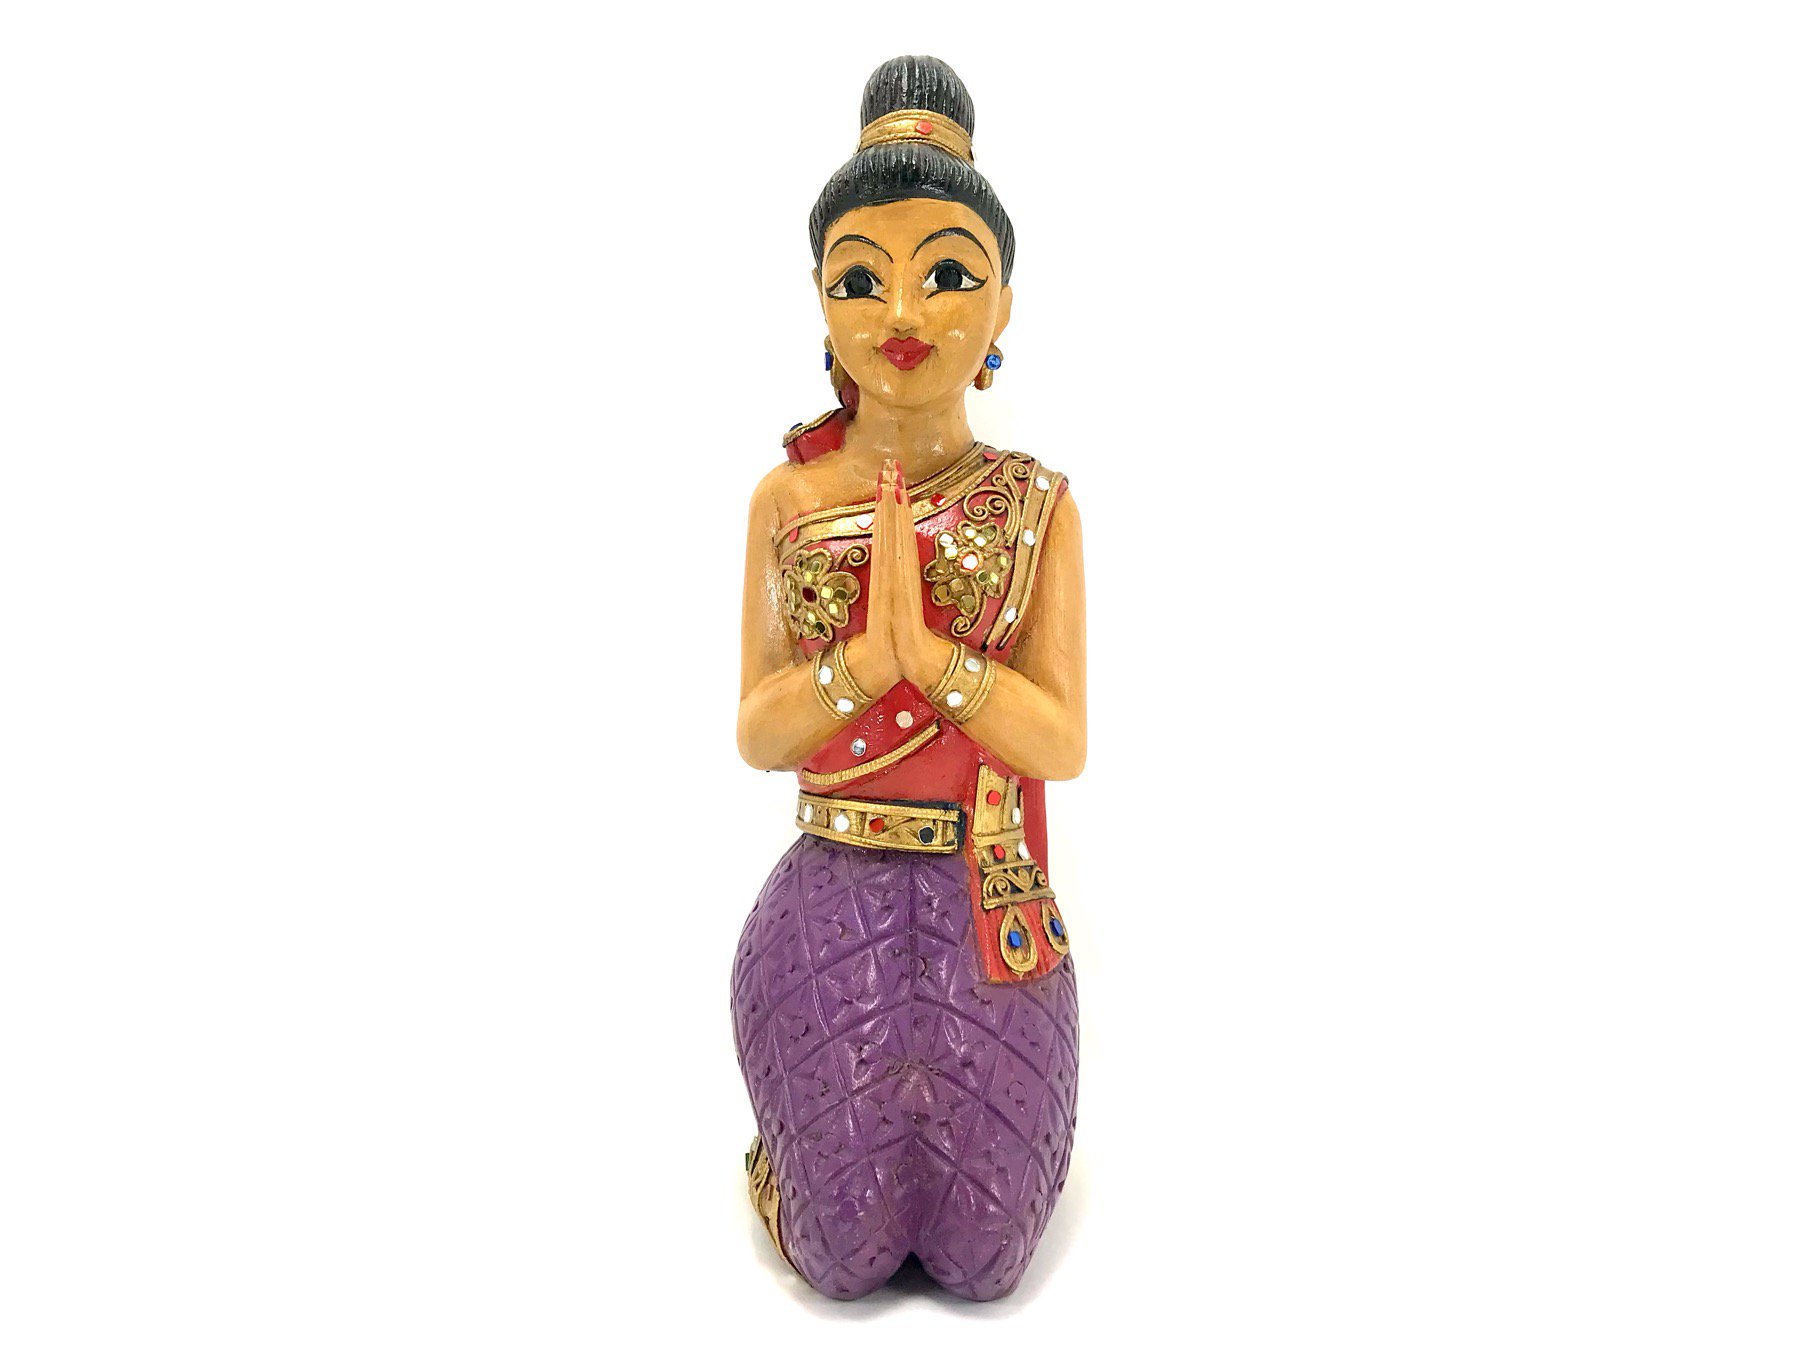 サワディー人形 - タイ・チェンマイより直接買付したアジアン雑貨店 アジアンショップ楽象